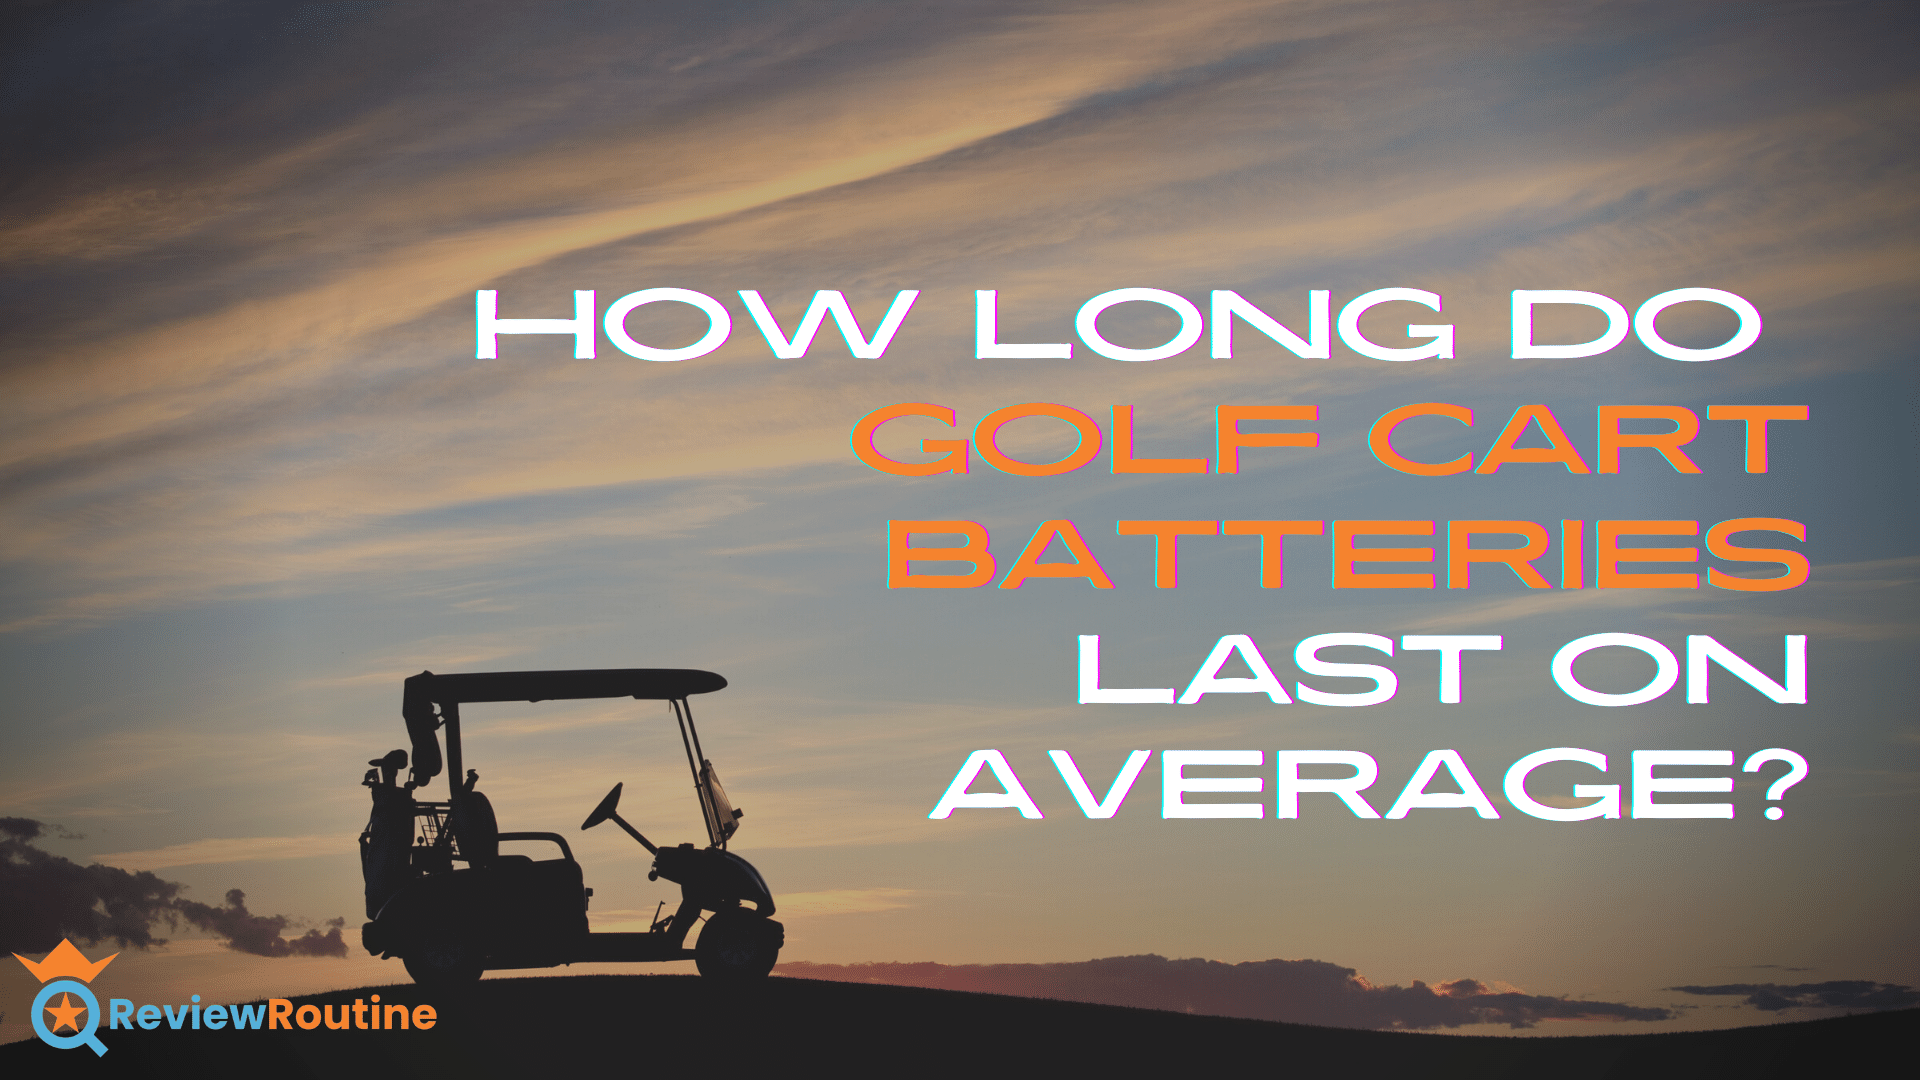 How Long Do Golf Cart Batteries Last on Average?